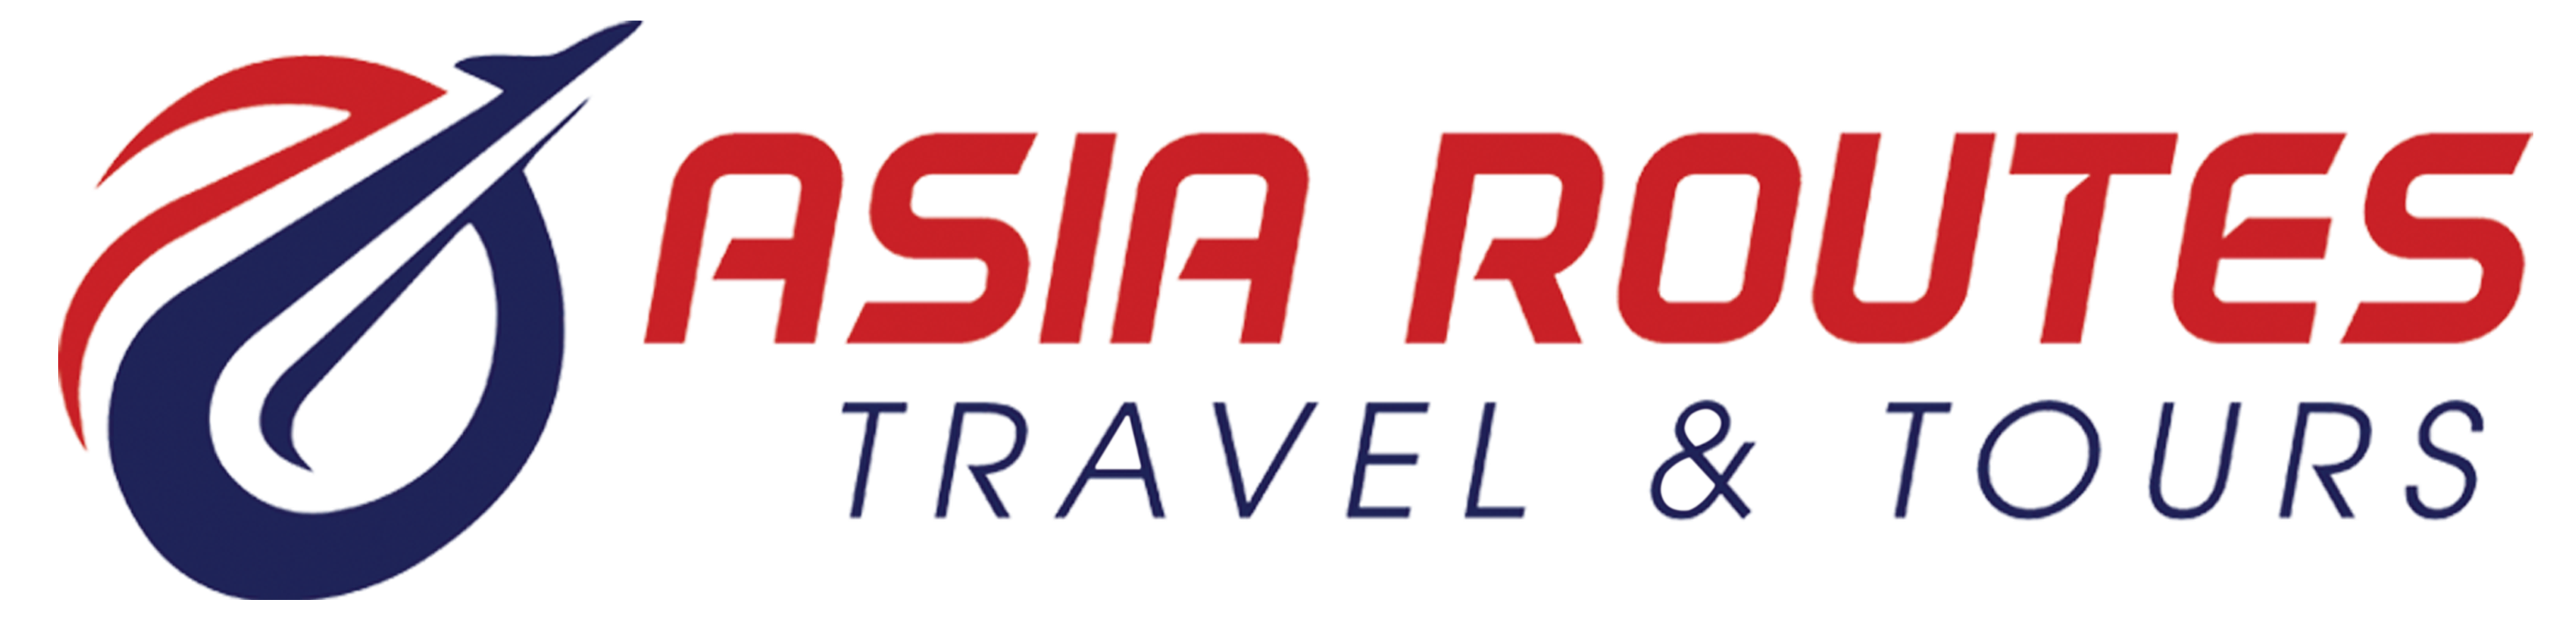 Asia Routes Travel & Tours |   Tours